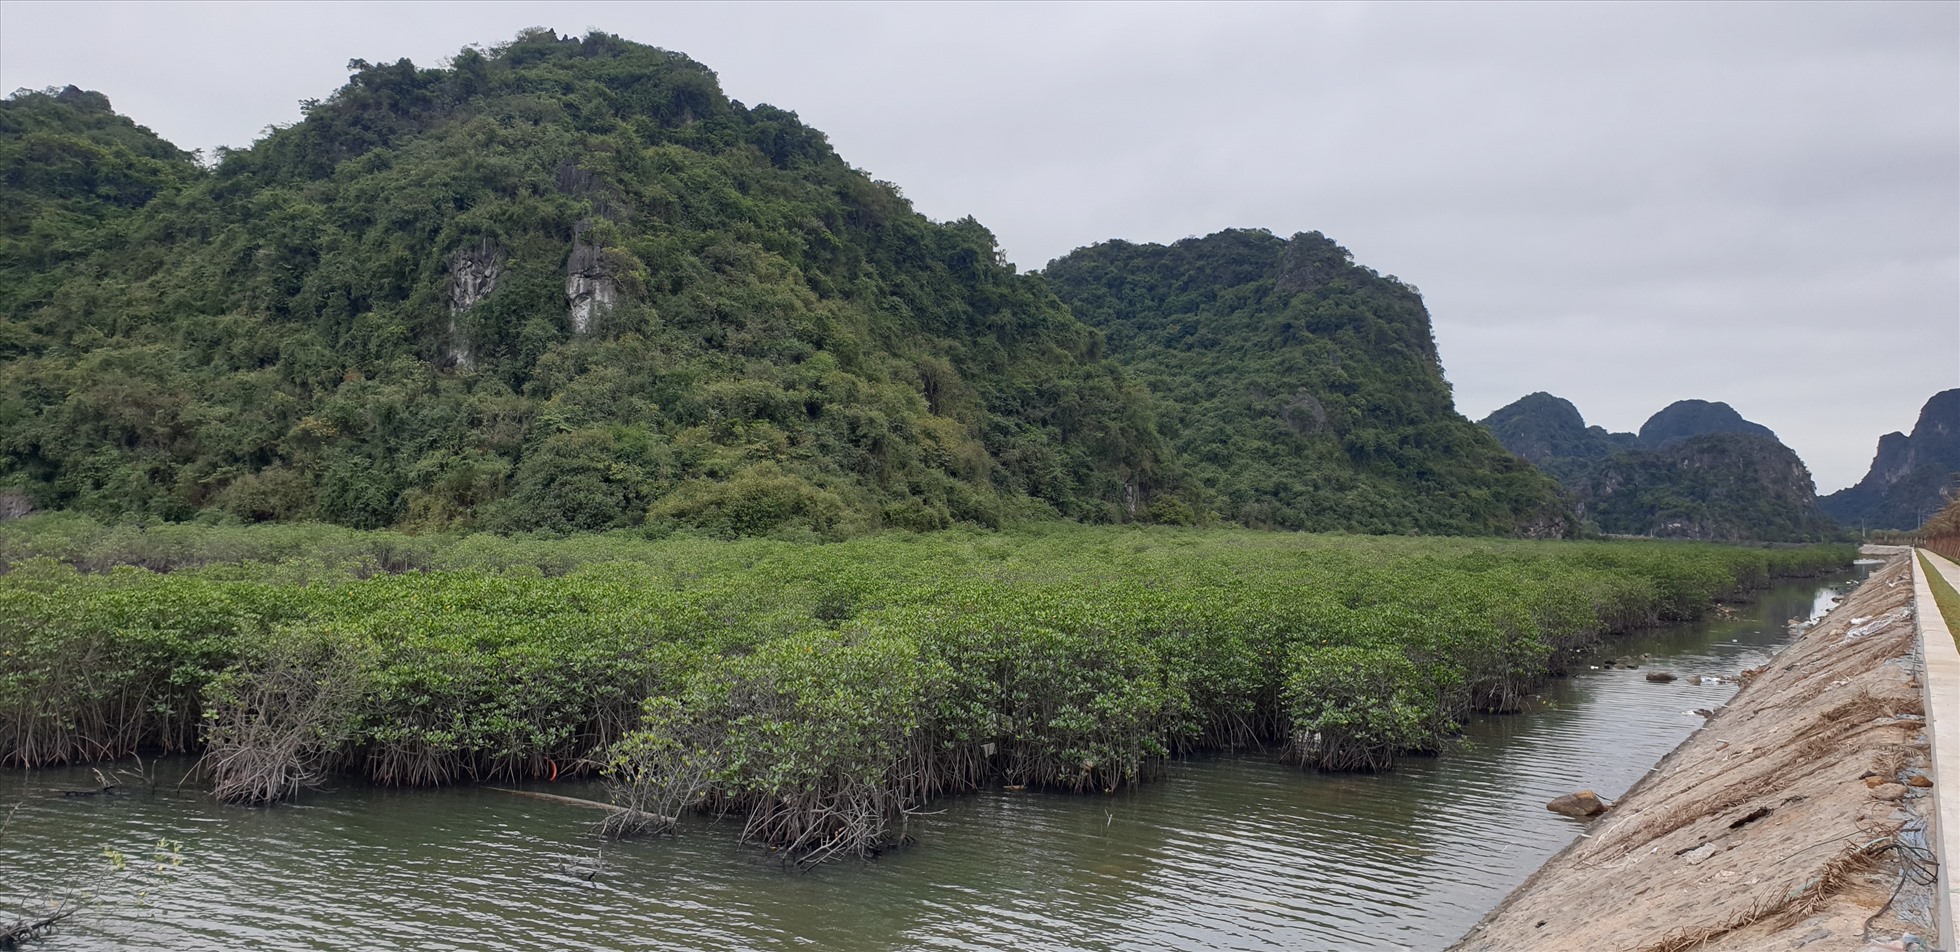 Tỉnh Quảng Ninh yêu cầu bảo vệ nghiêm ngặt các khu rừng ngập mặn, bãi triều 2 bên đường ven biển Hạ Long - Cẩm Phả. Ảnh: Nguyễn Hùng